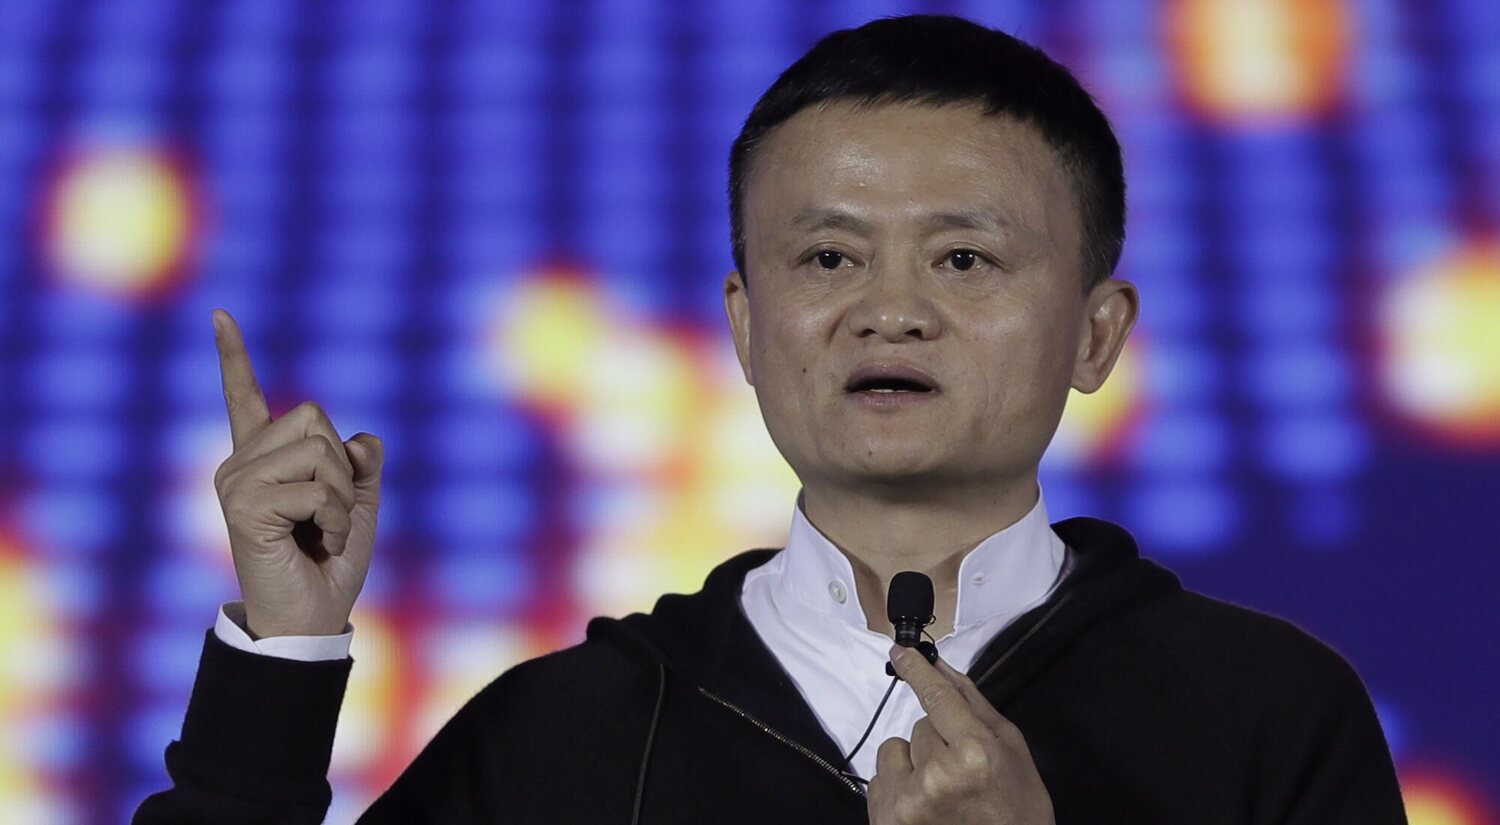 ¿Alguien sabe algo de Jack Ma (otra vez)?